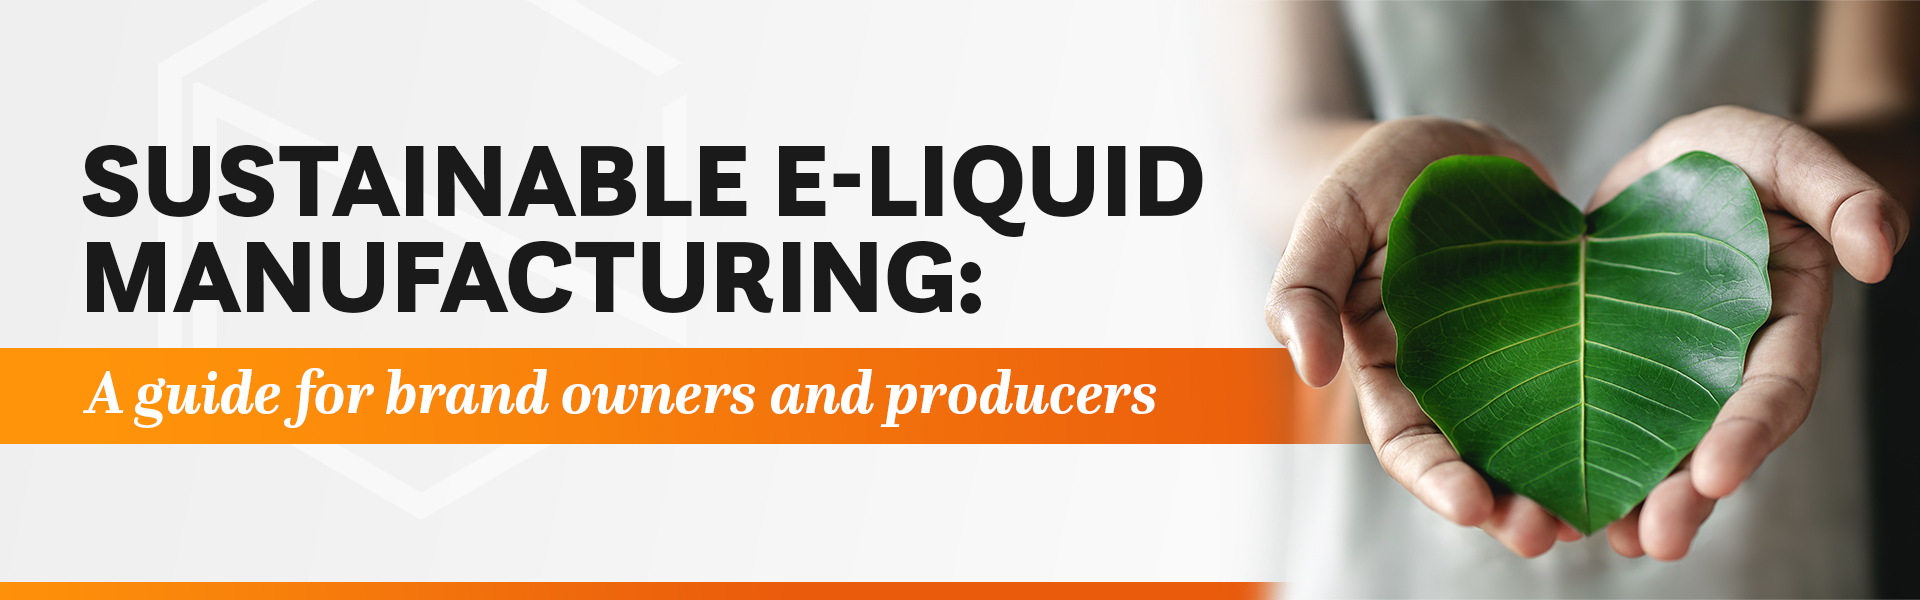 sustainable e-liquid manufacturing